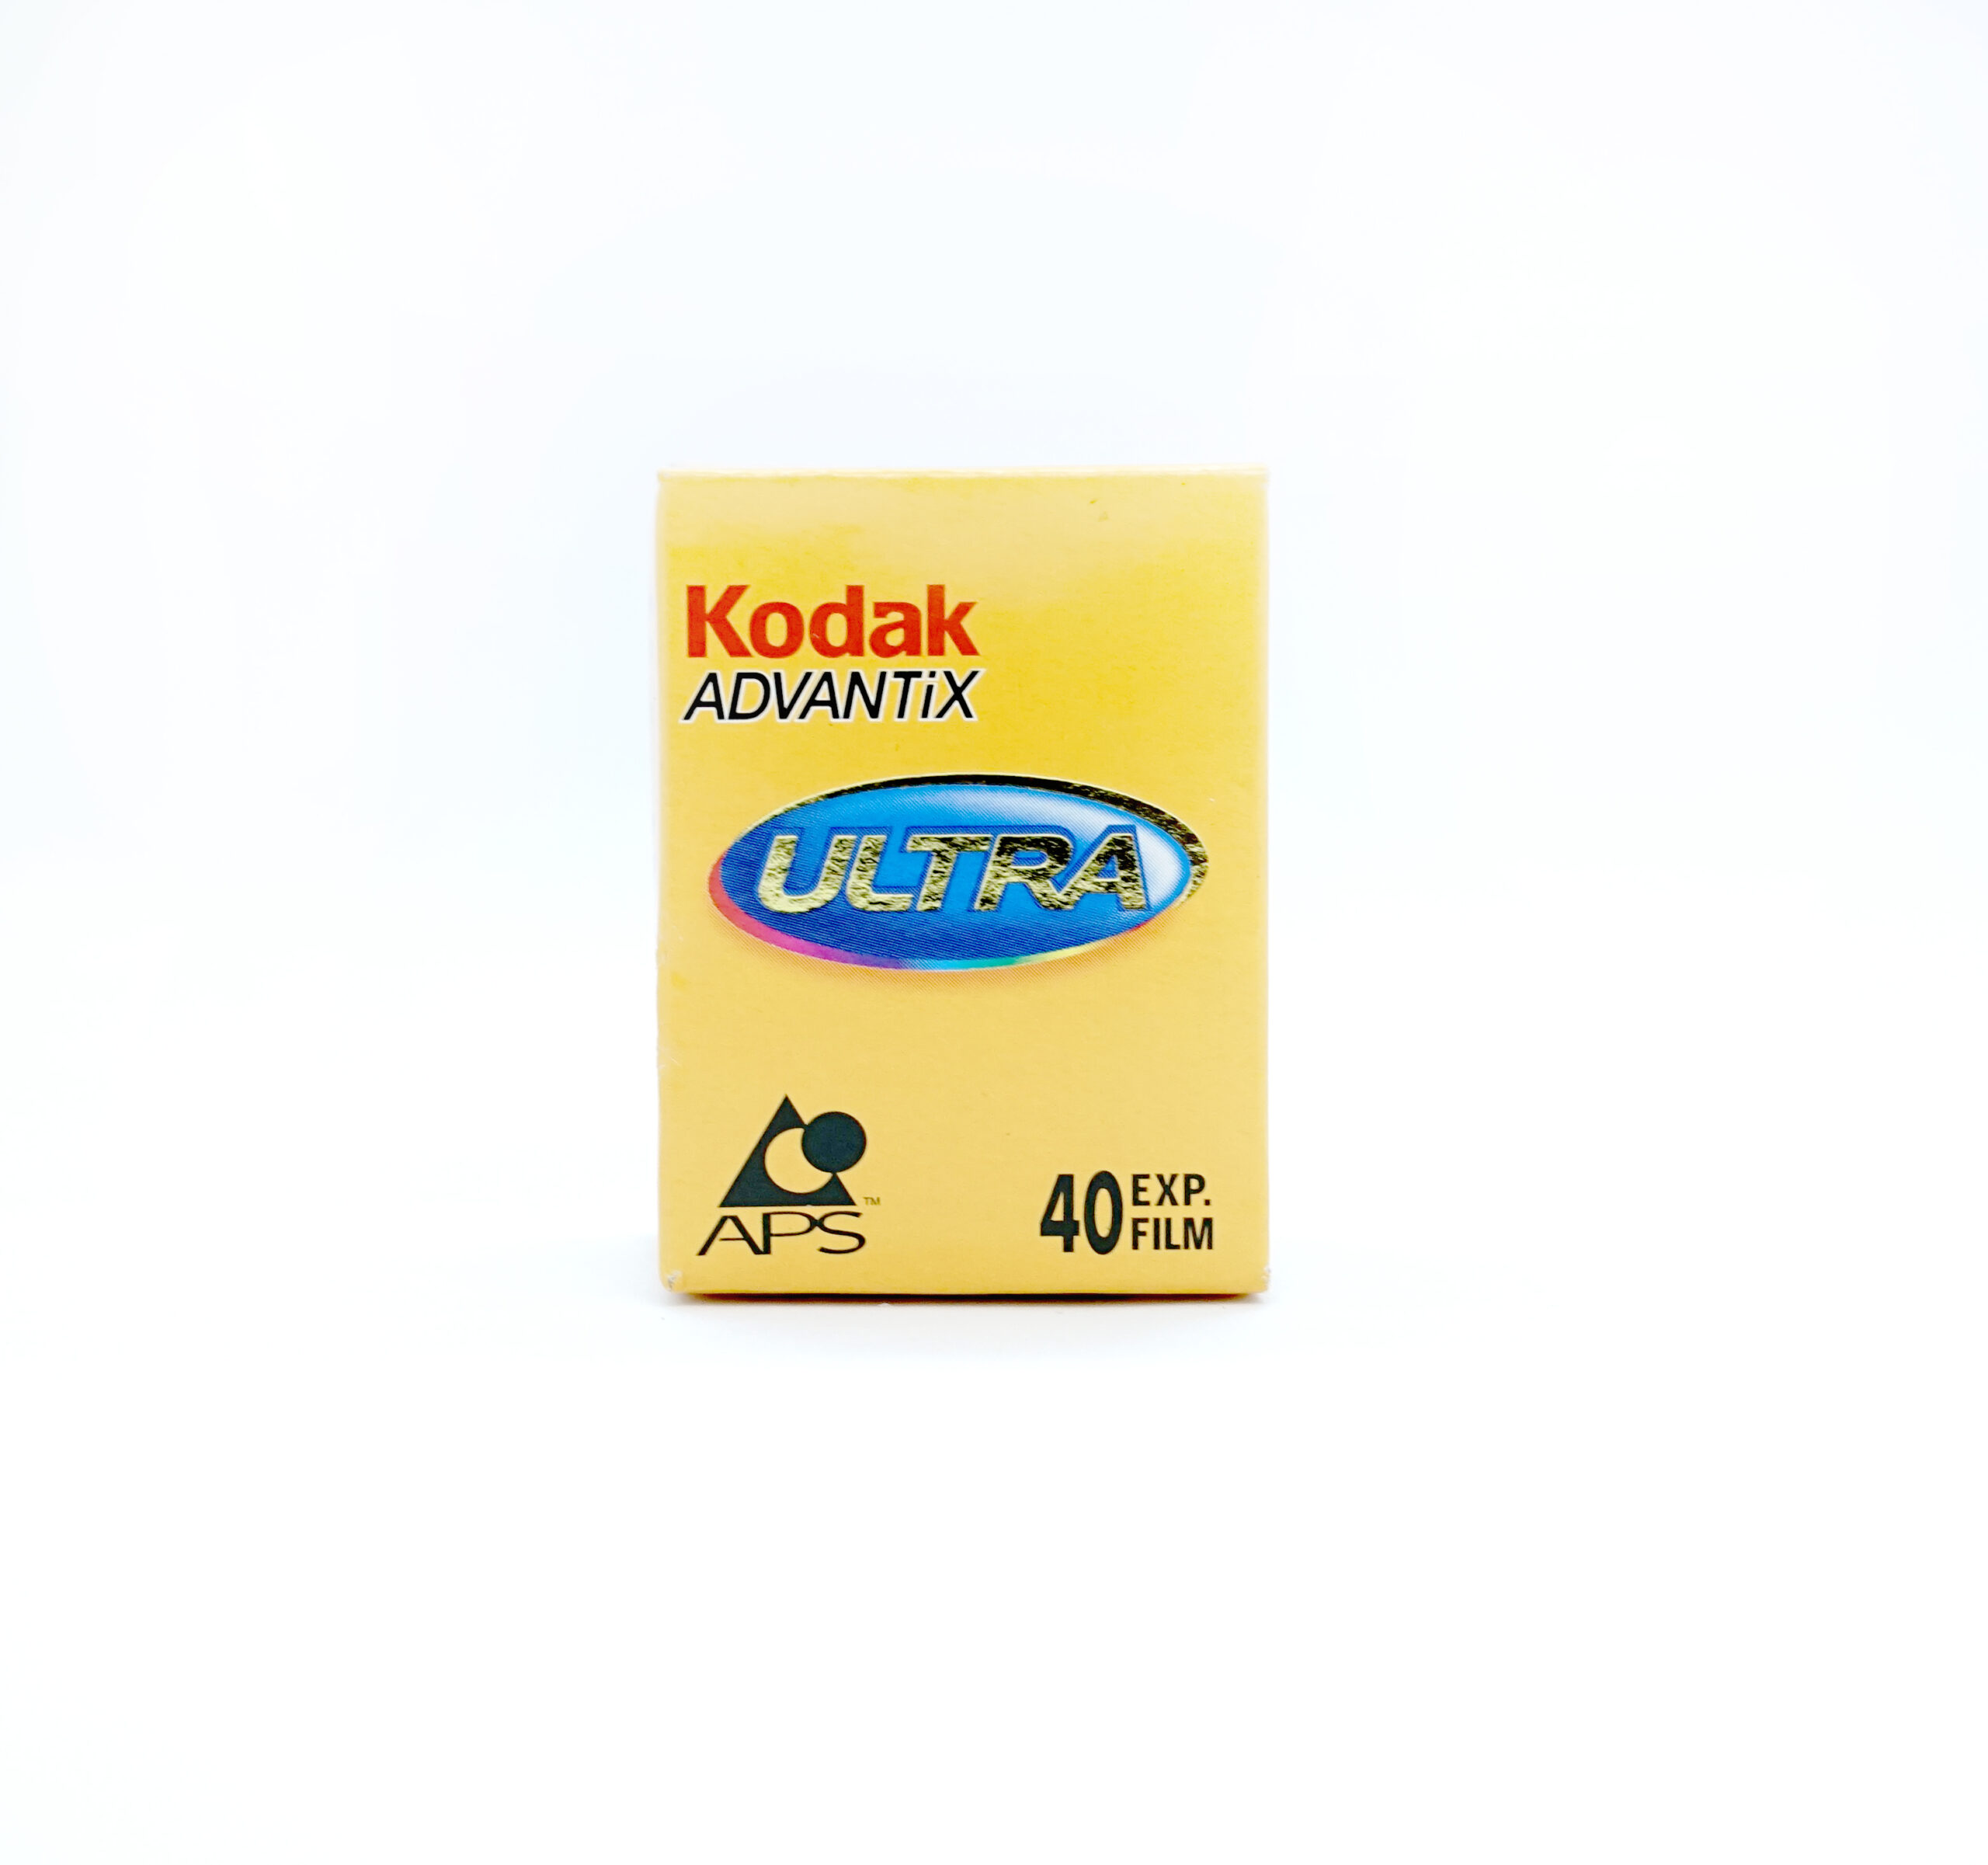 Film Kodak Ultra Advantix APS 40 zdjęć